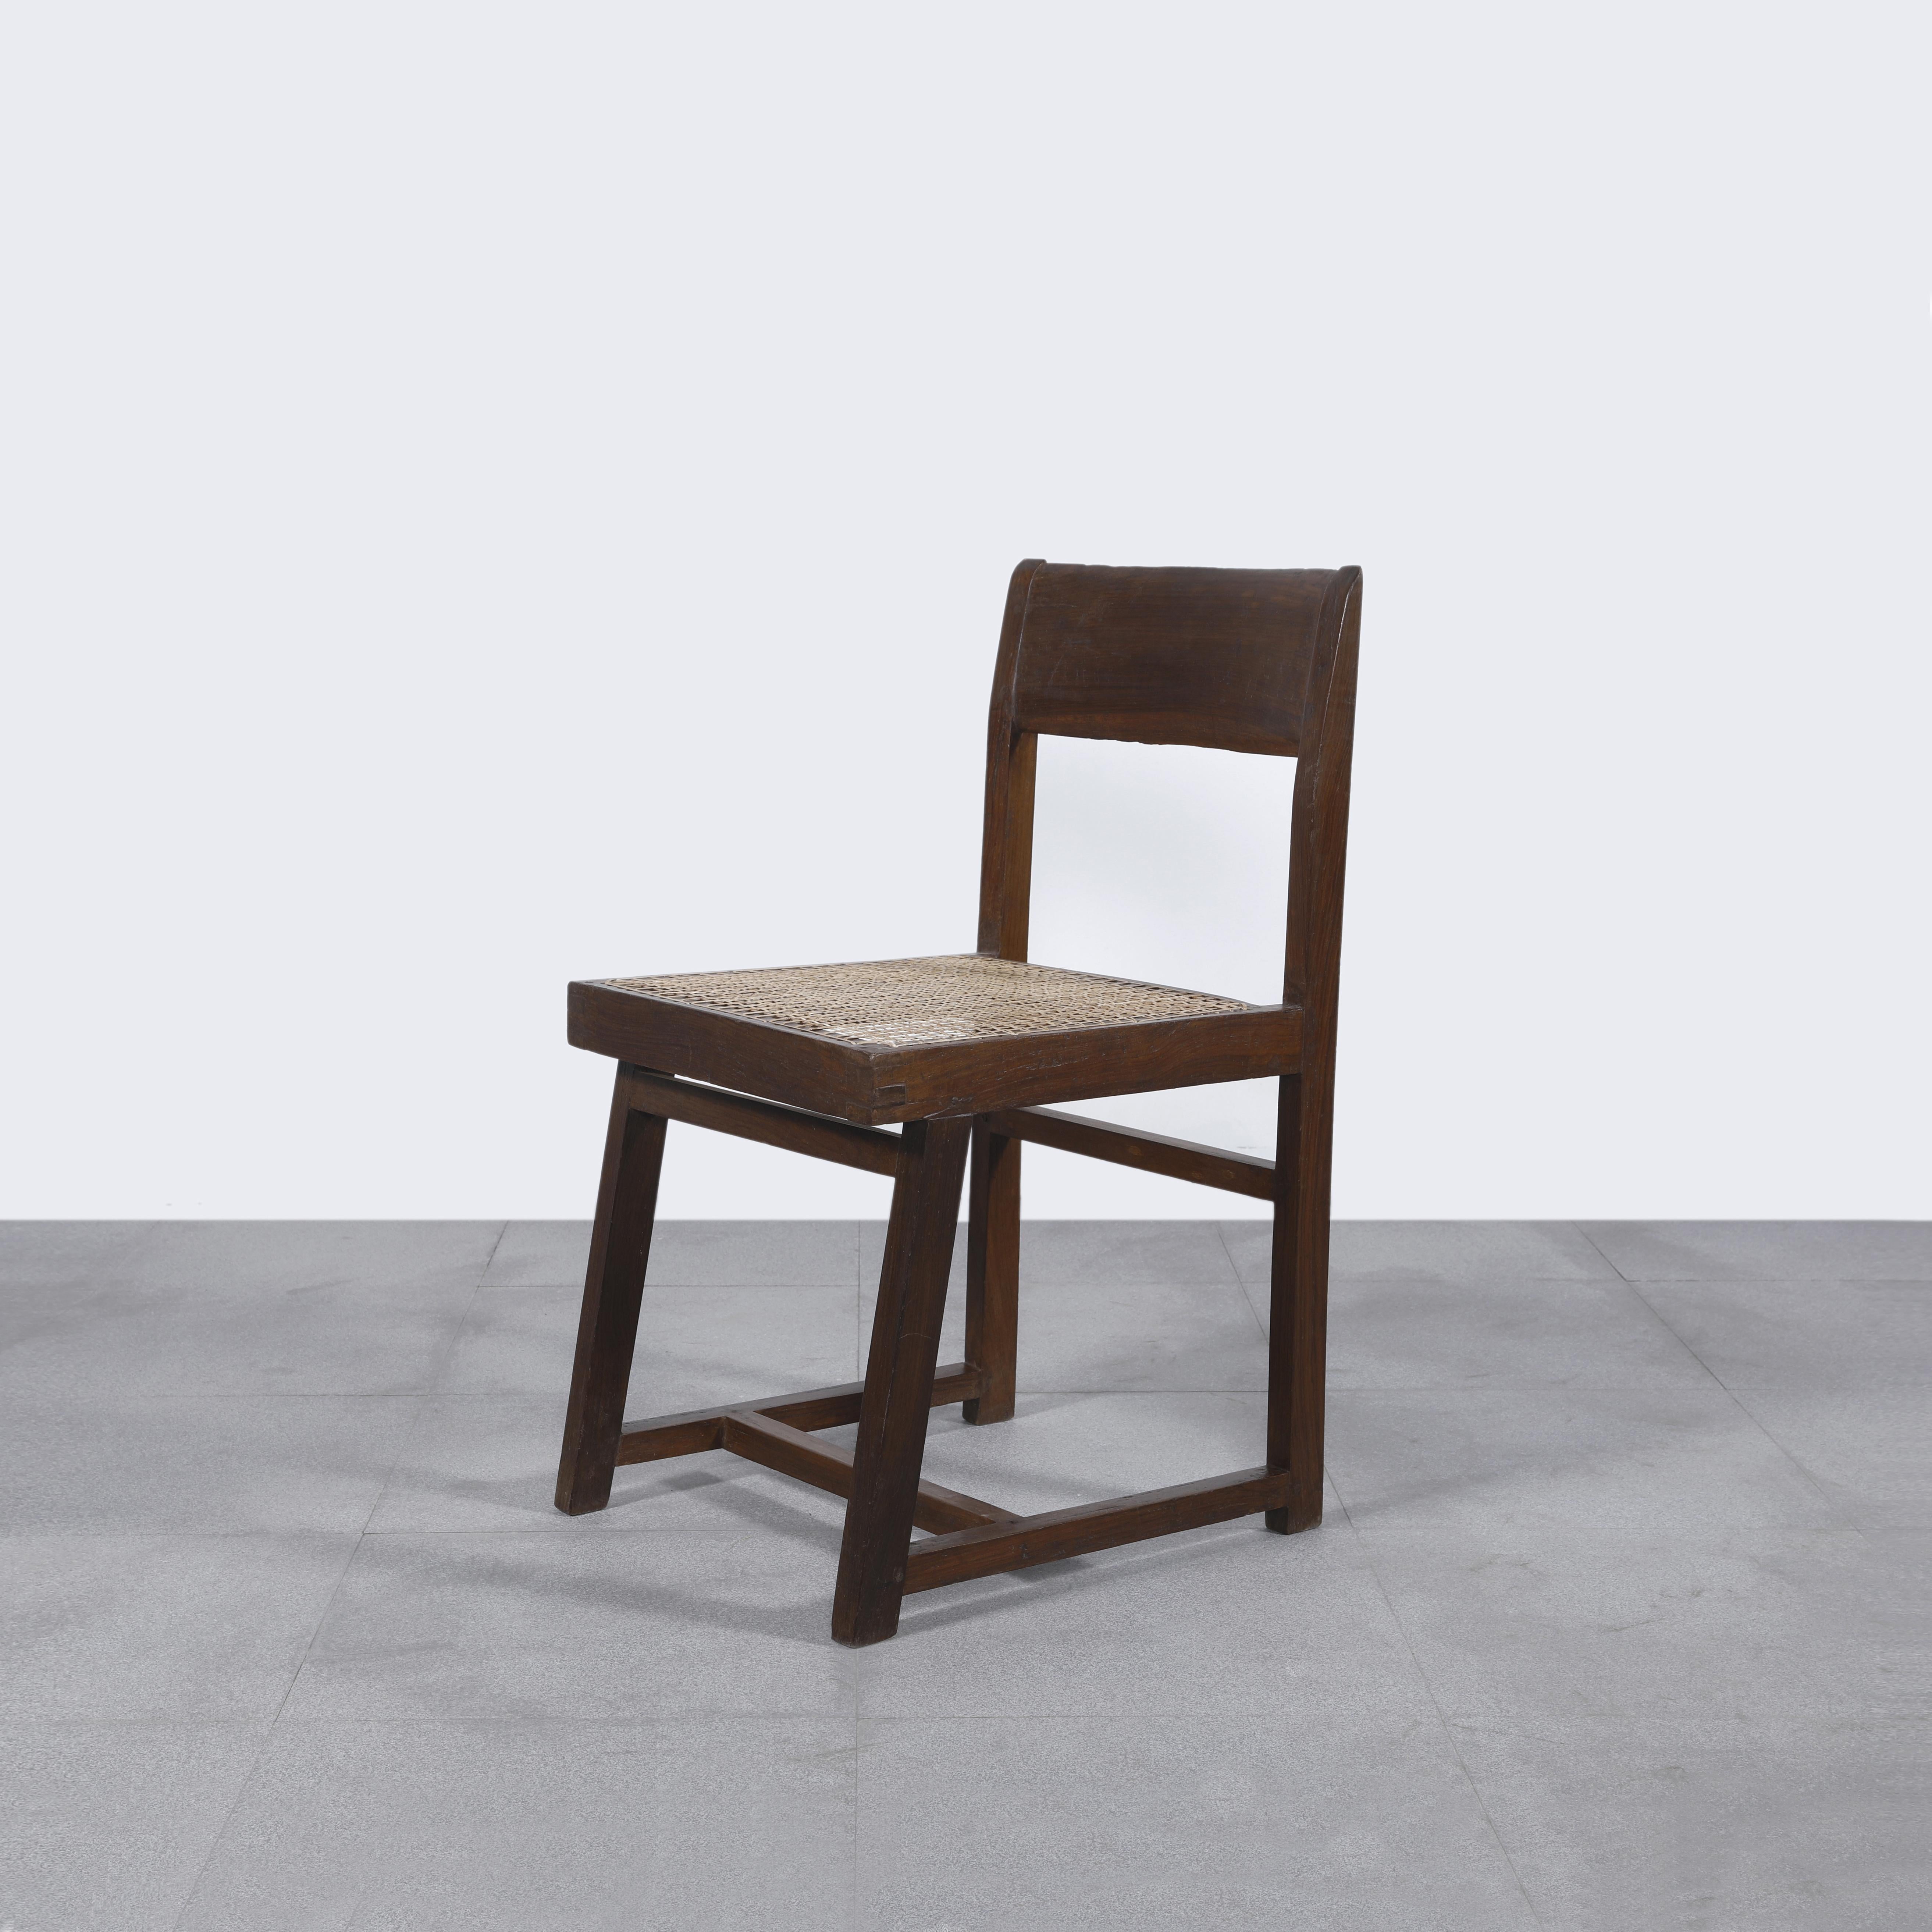 Cette chaise est une pièce emblématique du design. Il est brut dans sa simplicité et présente une matière légèrement patinée. En teck massif avec assise en cannage tressé, vers 1960. Une patine fantastique. Conservé dans son état d'origine avec un